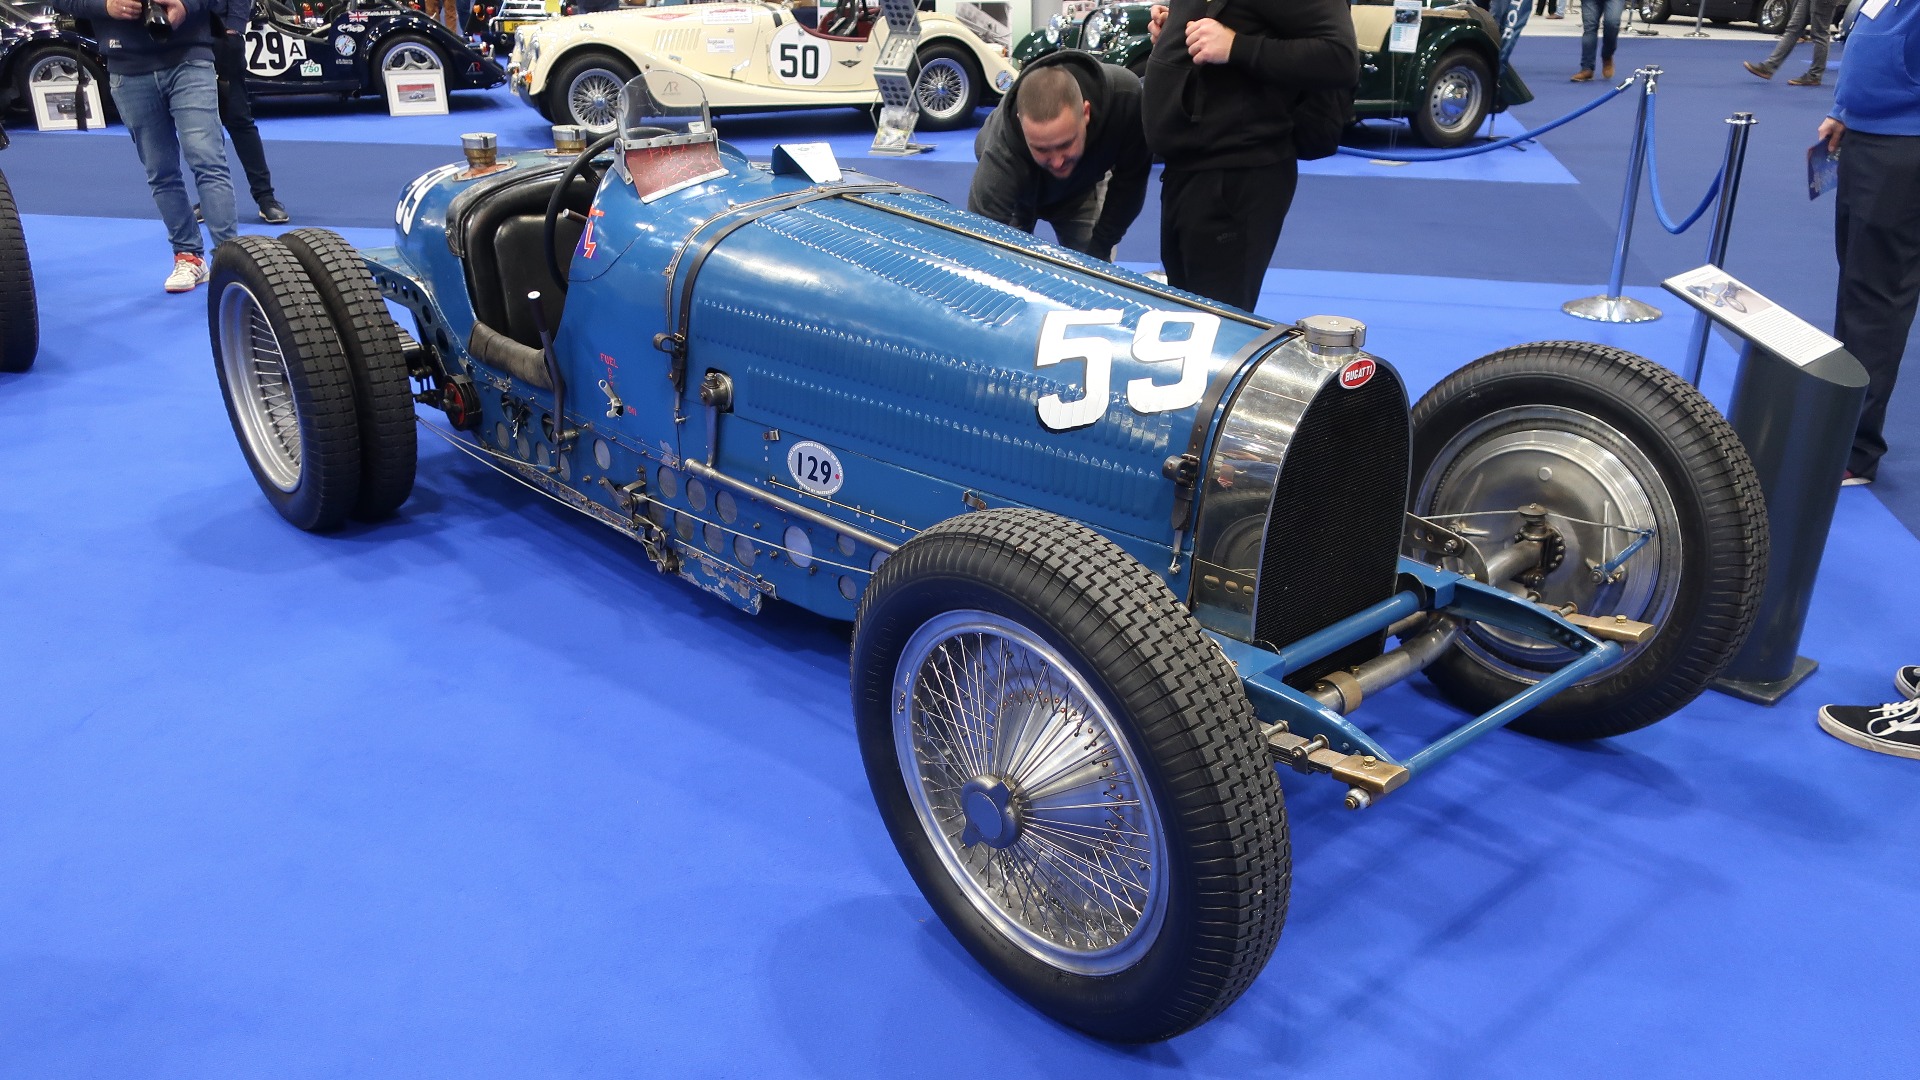 Bugatti Type 59 er bare supertøft, særlig med doble bakhjul slik den ofte ble kjørt i bakkeløp i England. Messens suverent tøffeste racerbil.